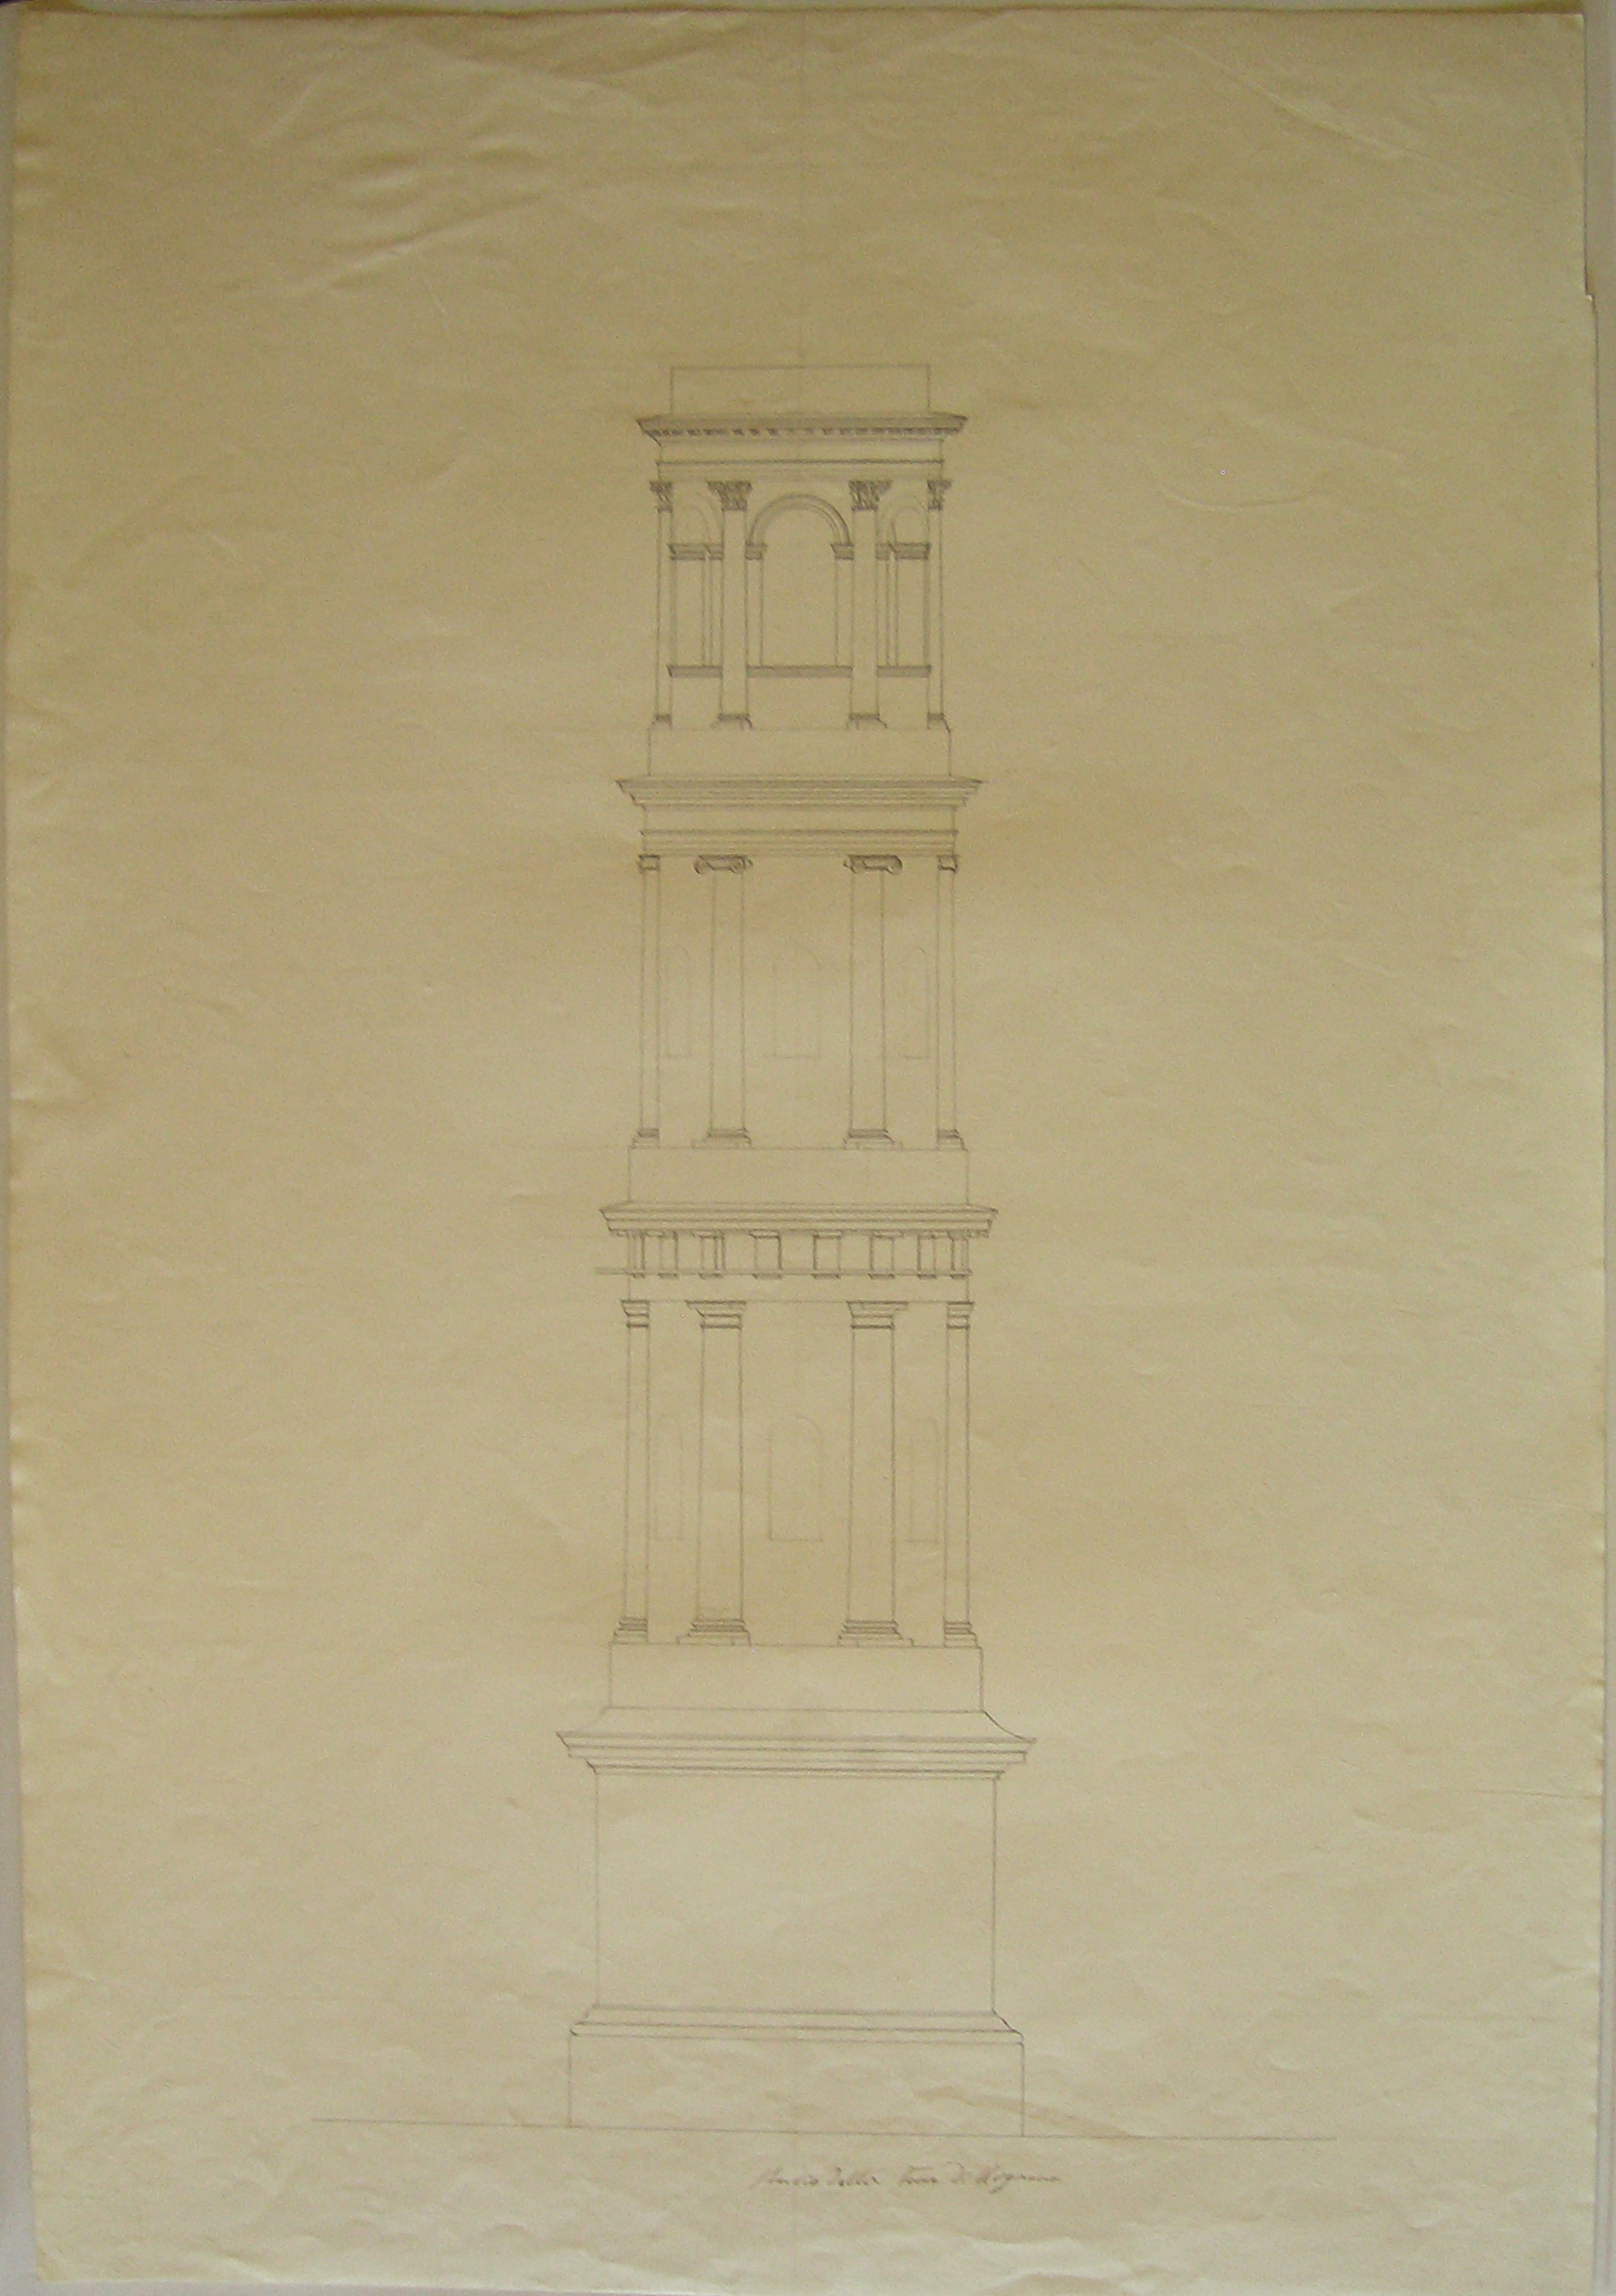 Studio della Torre di Urgnano, Progetto architettonico: studio per una torre campanaria a Urgnano. Prospetto (disegno architettonico) di Cagnola Luigi (sec. XIX)